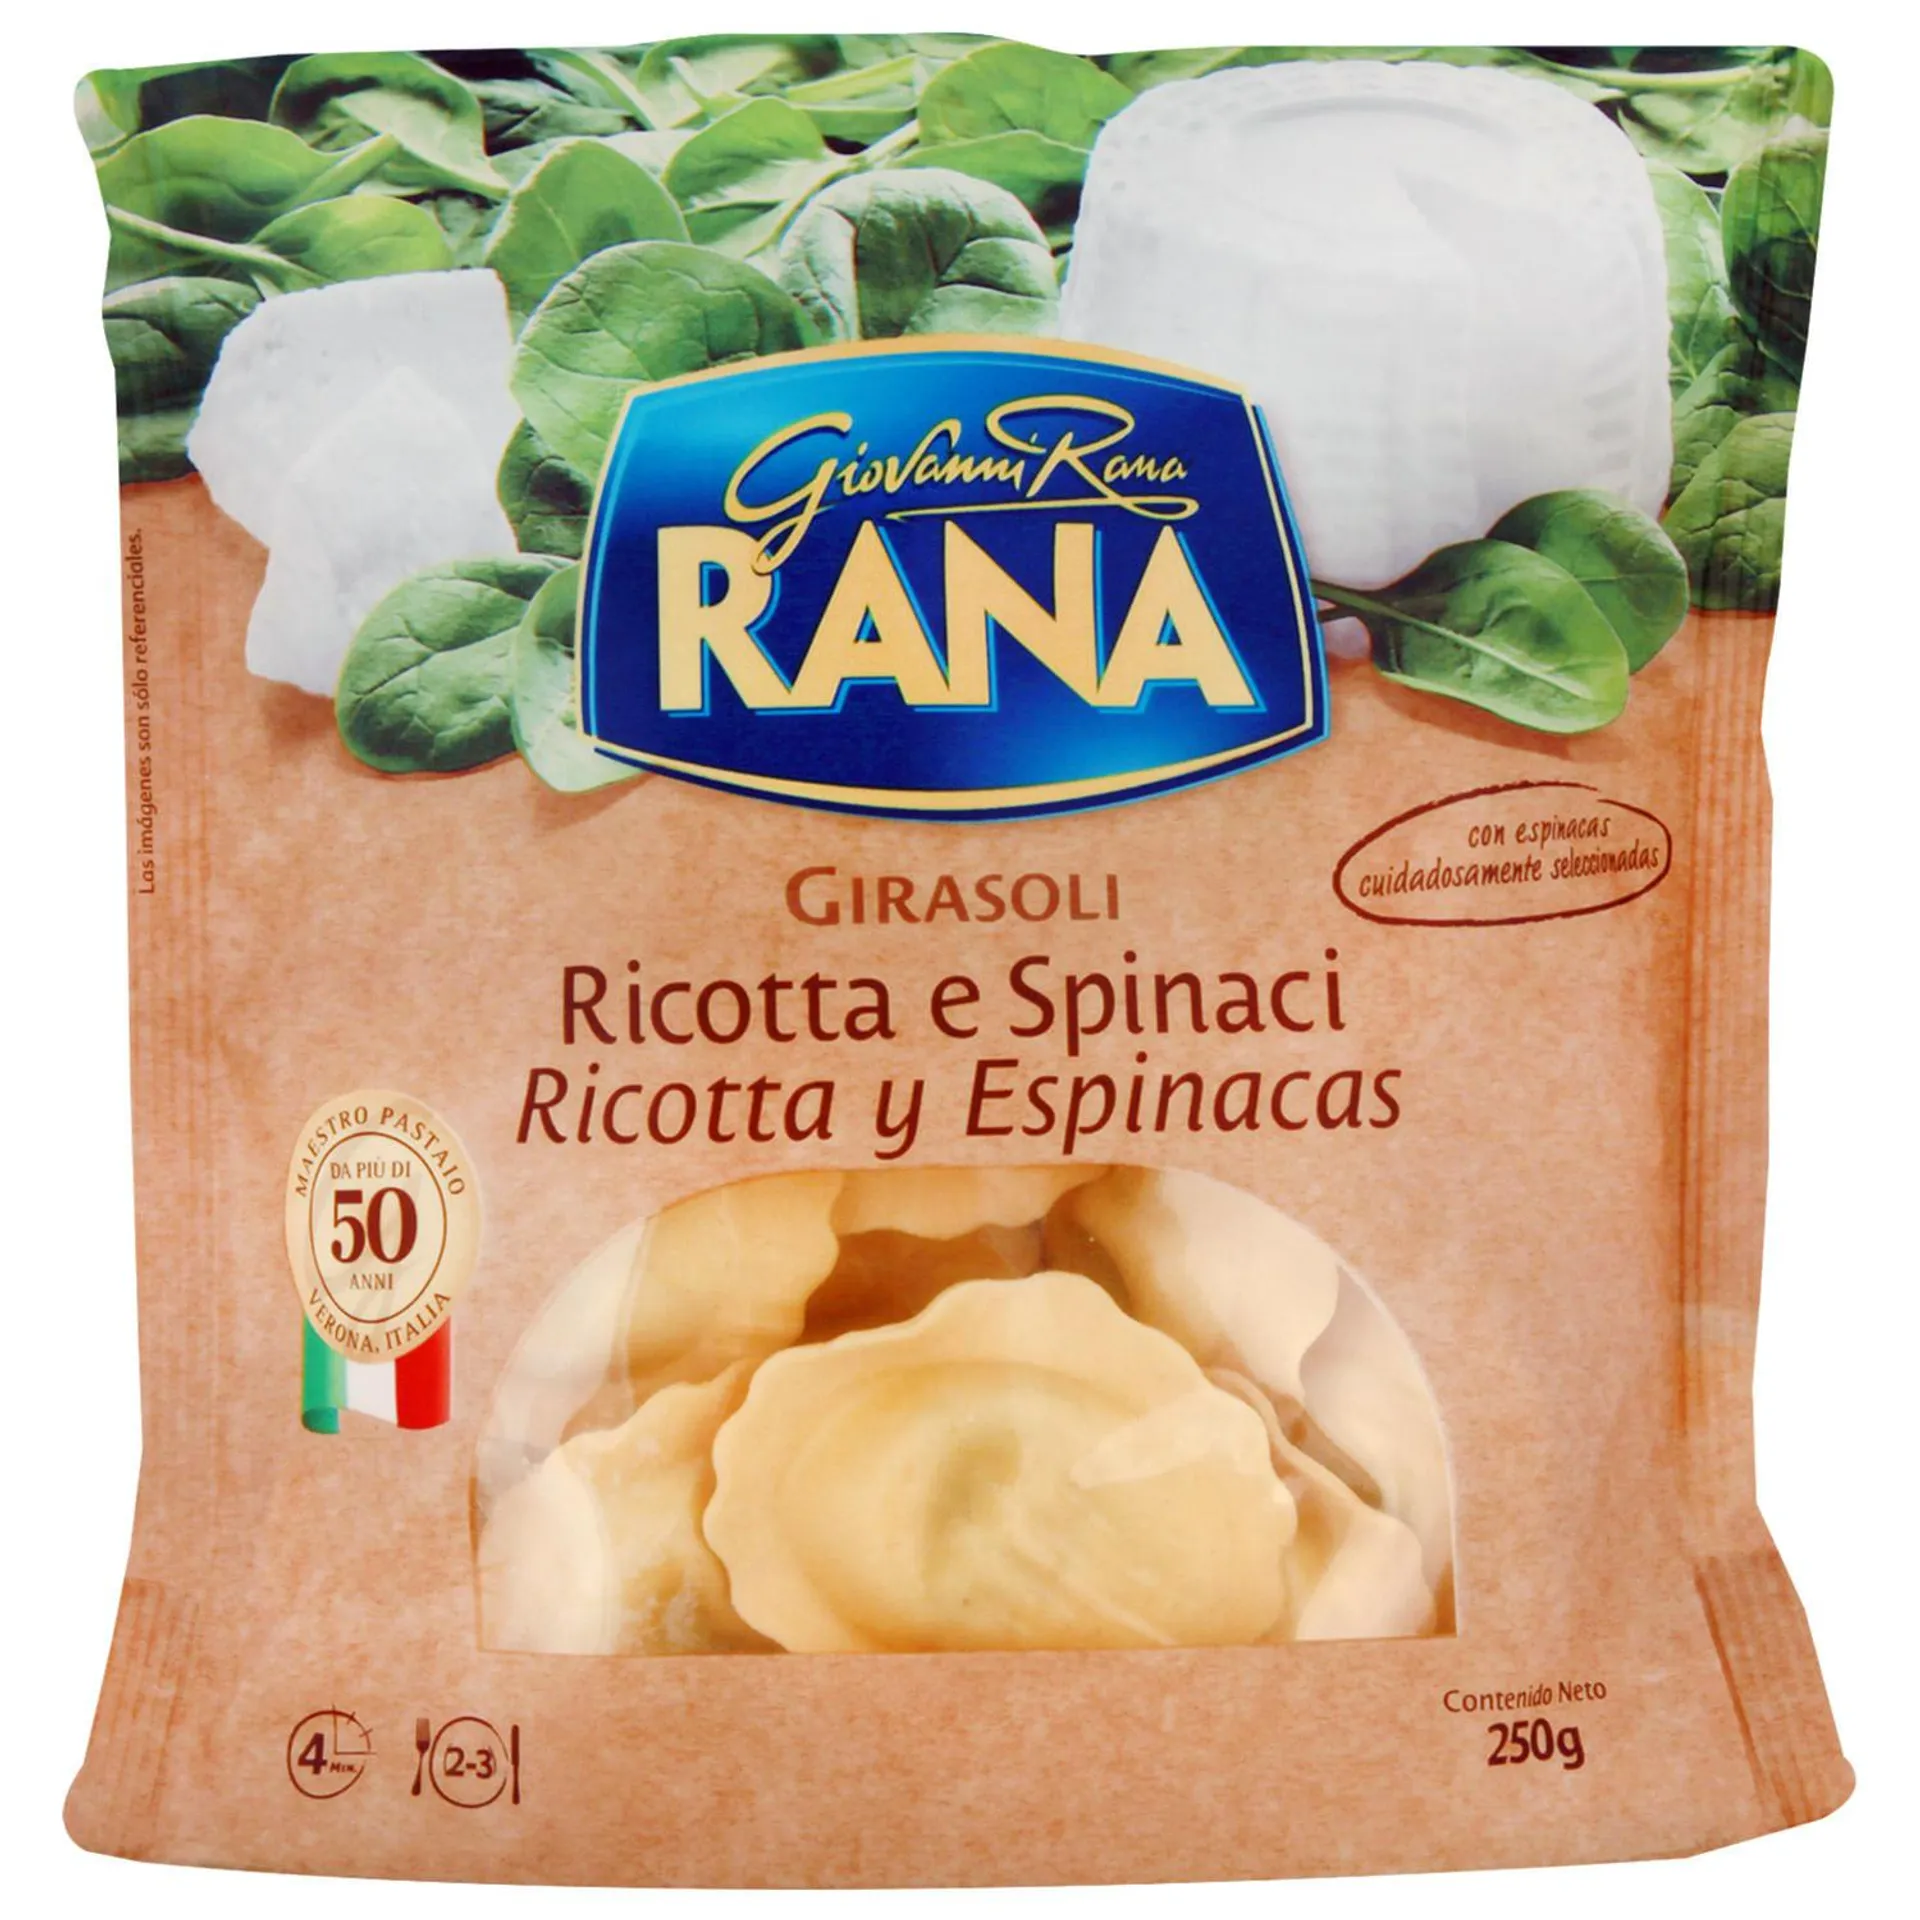 Pasta fresca girasoli ricotta espinaca Rana 250 g